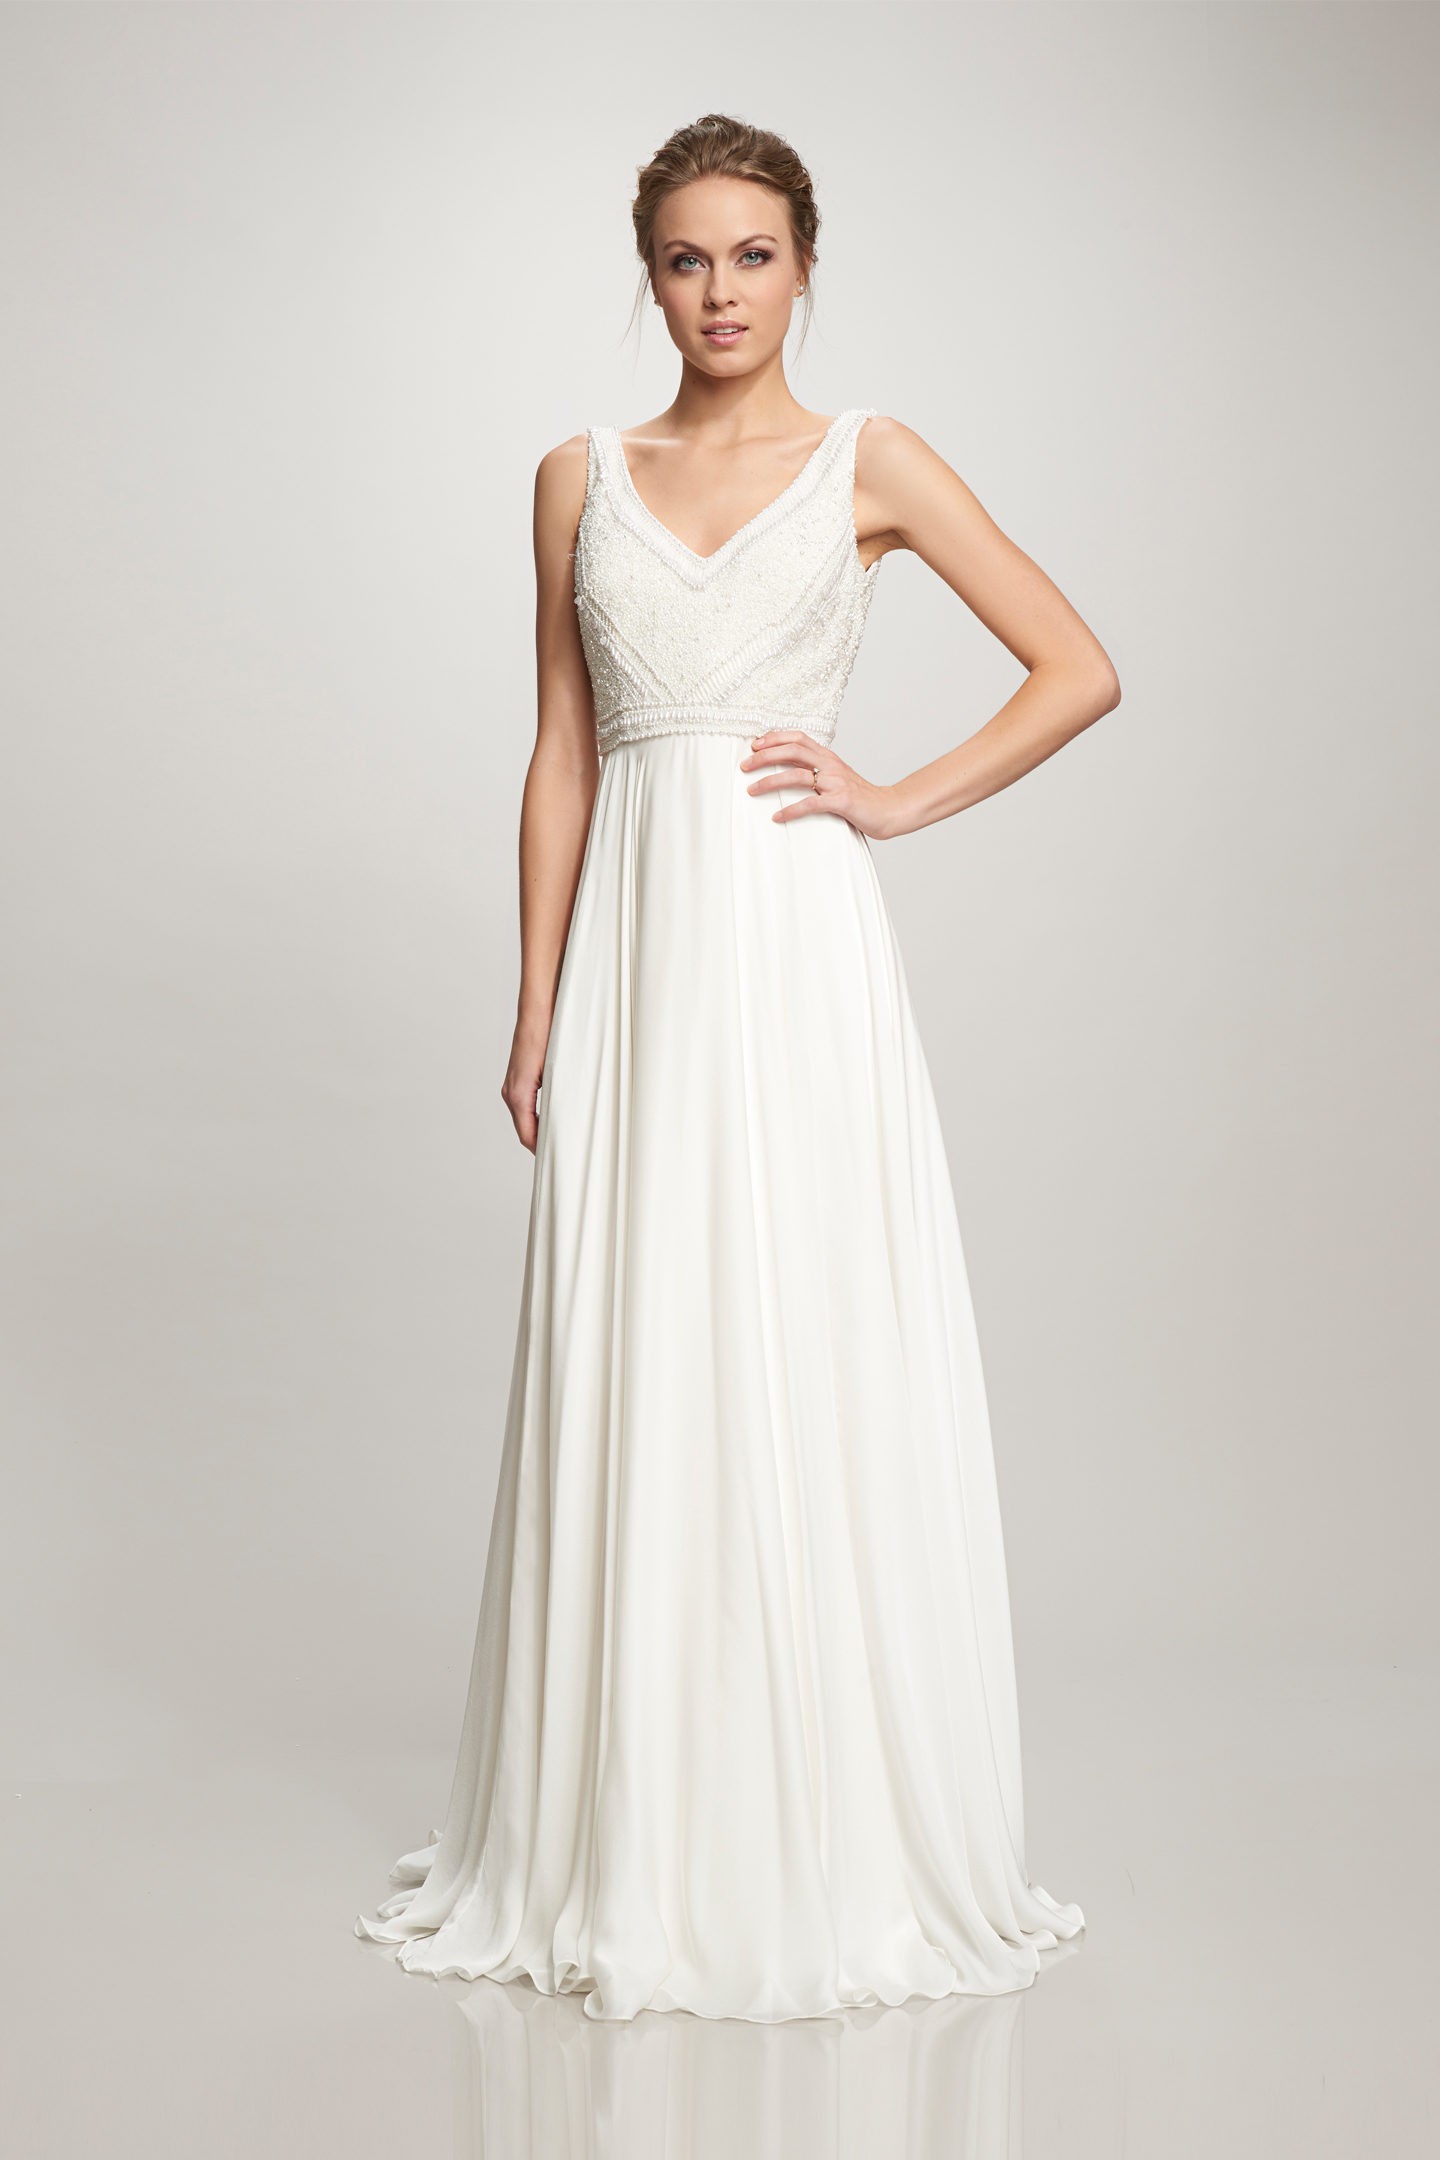 Theia Couture Ava New Wedding Dress Save 86% - Stillwhite